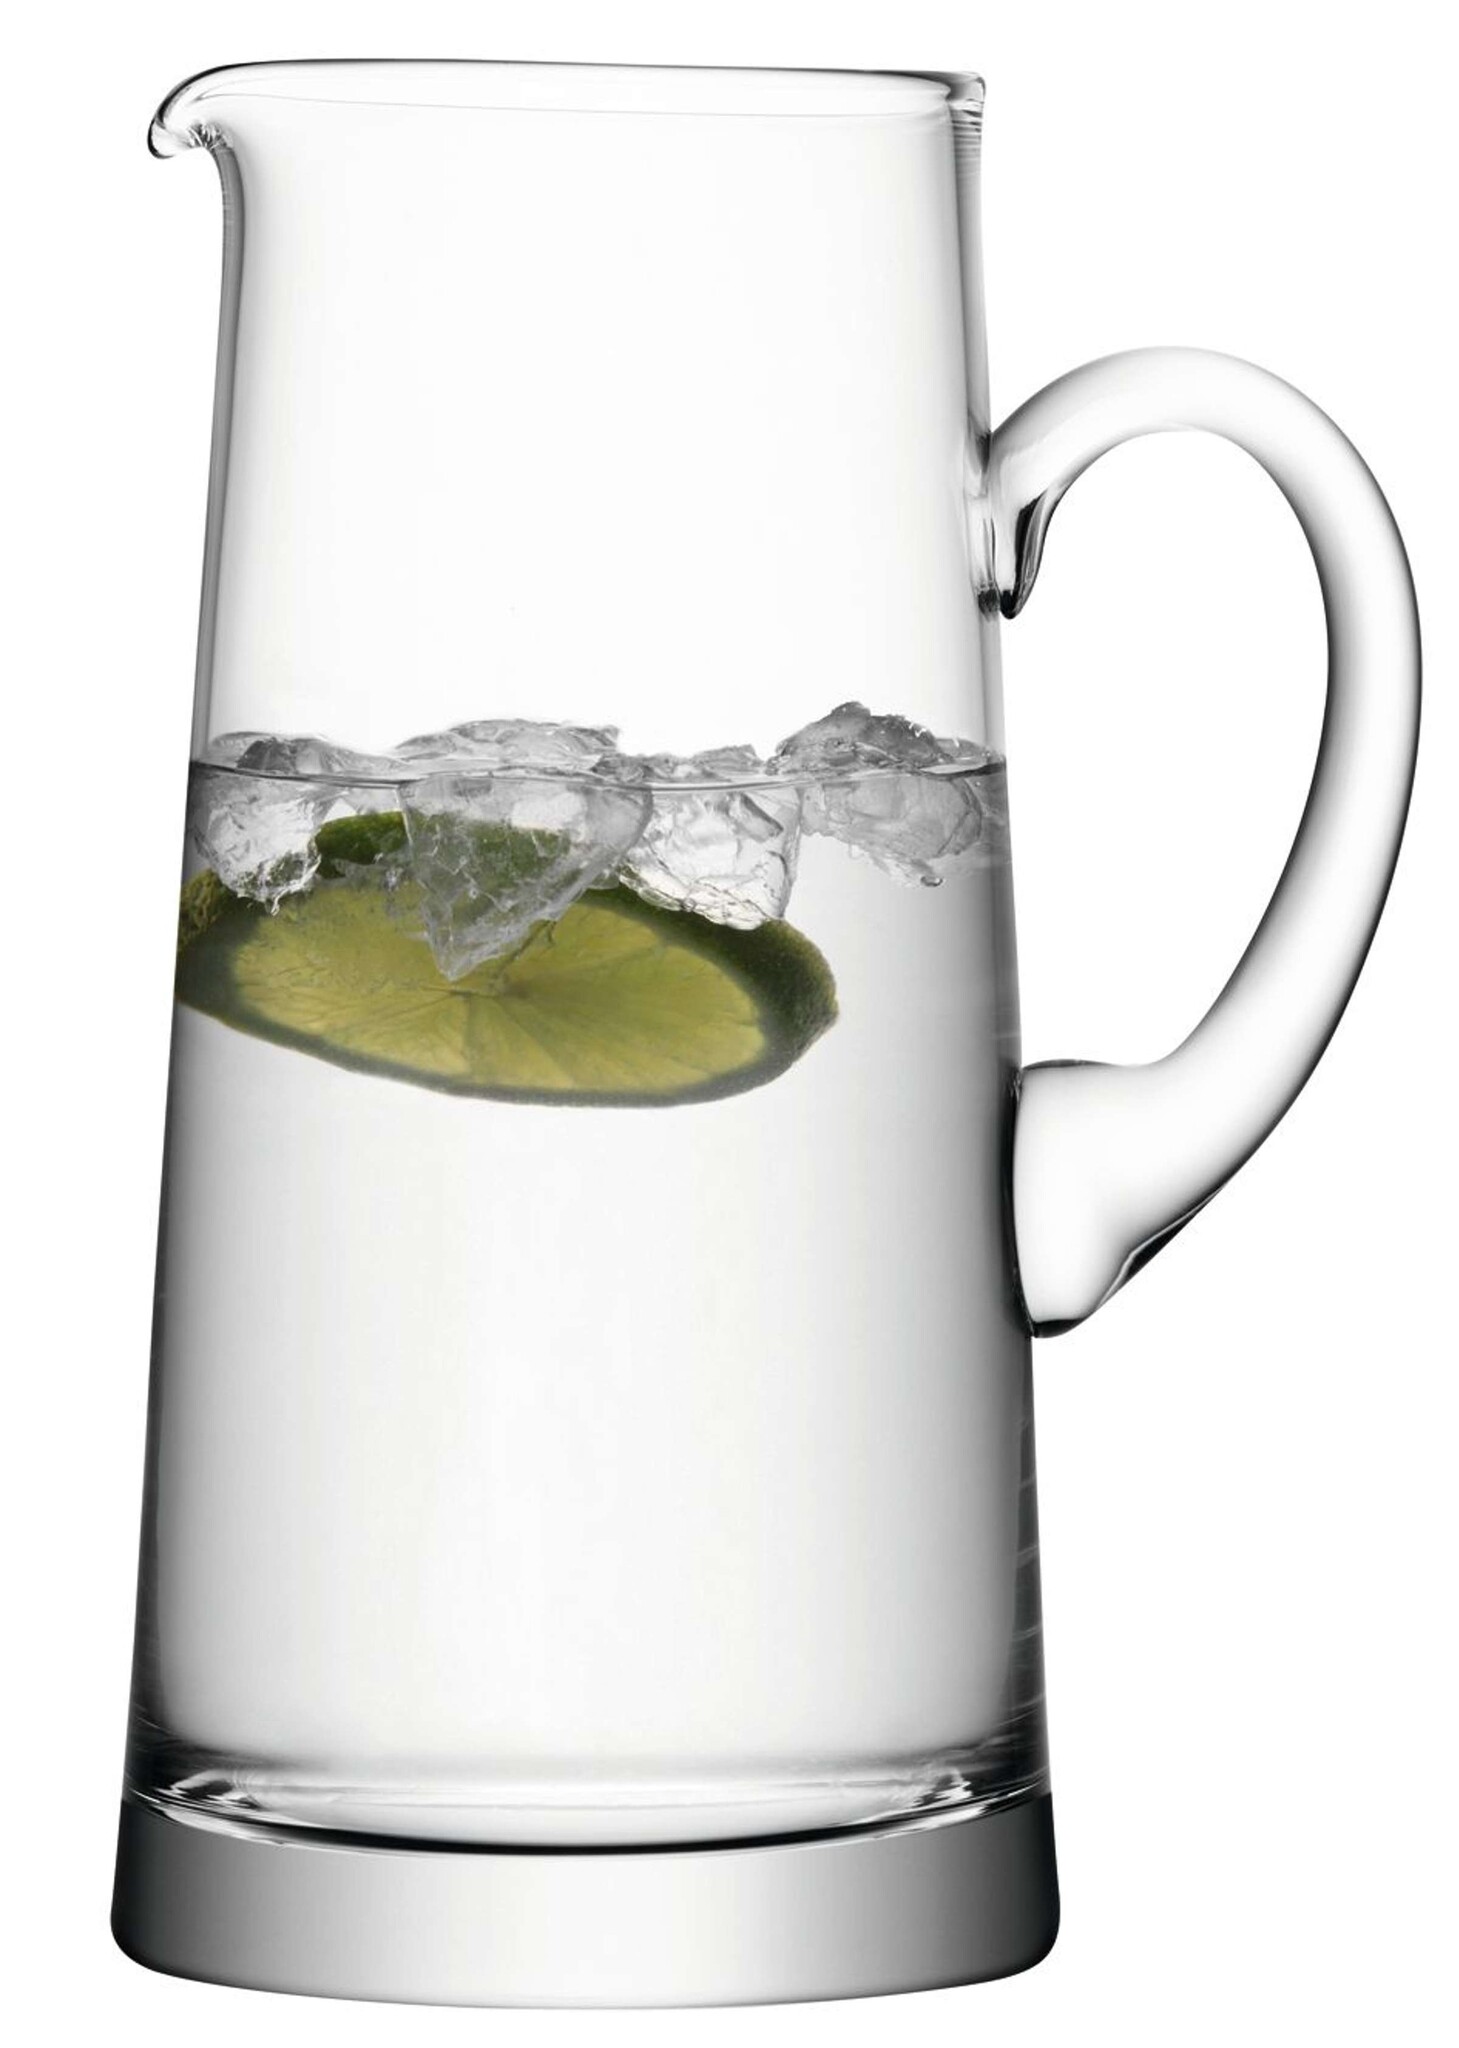 L.S.A. Bar Karaffe 1,9 liter